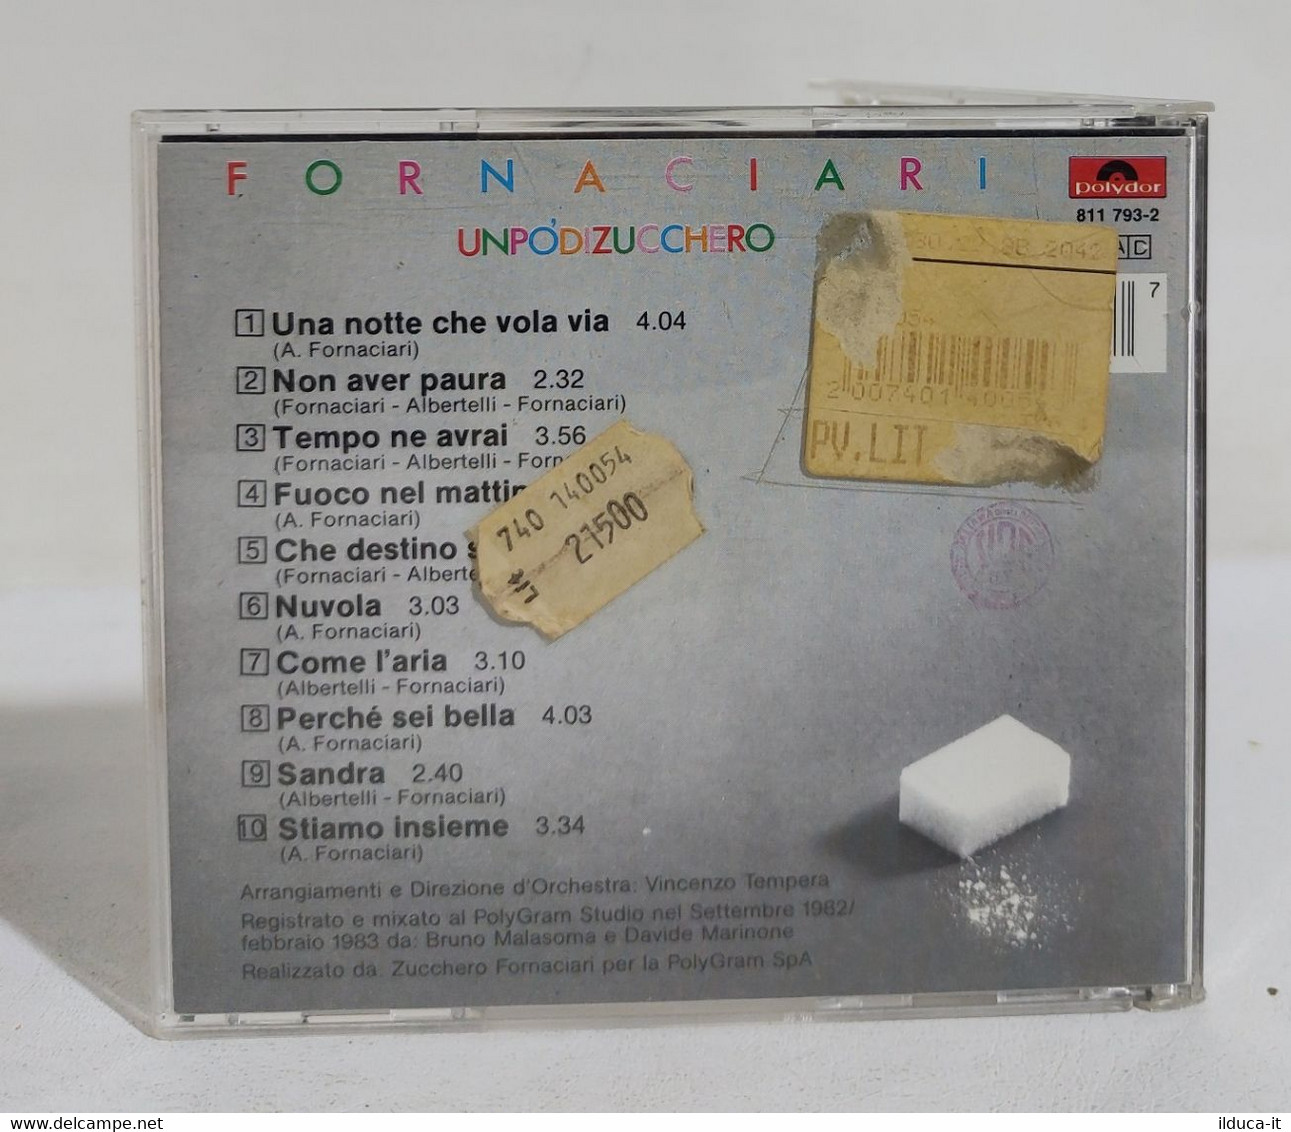 I107821 CD - ZUCCHERO FORNACIARI - Un Po' Di Zucchero - Polydor 1983 - Sonstige - Italienische Musik